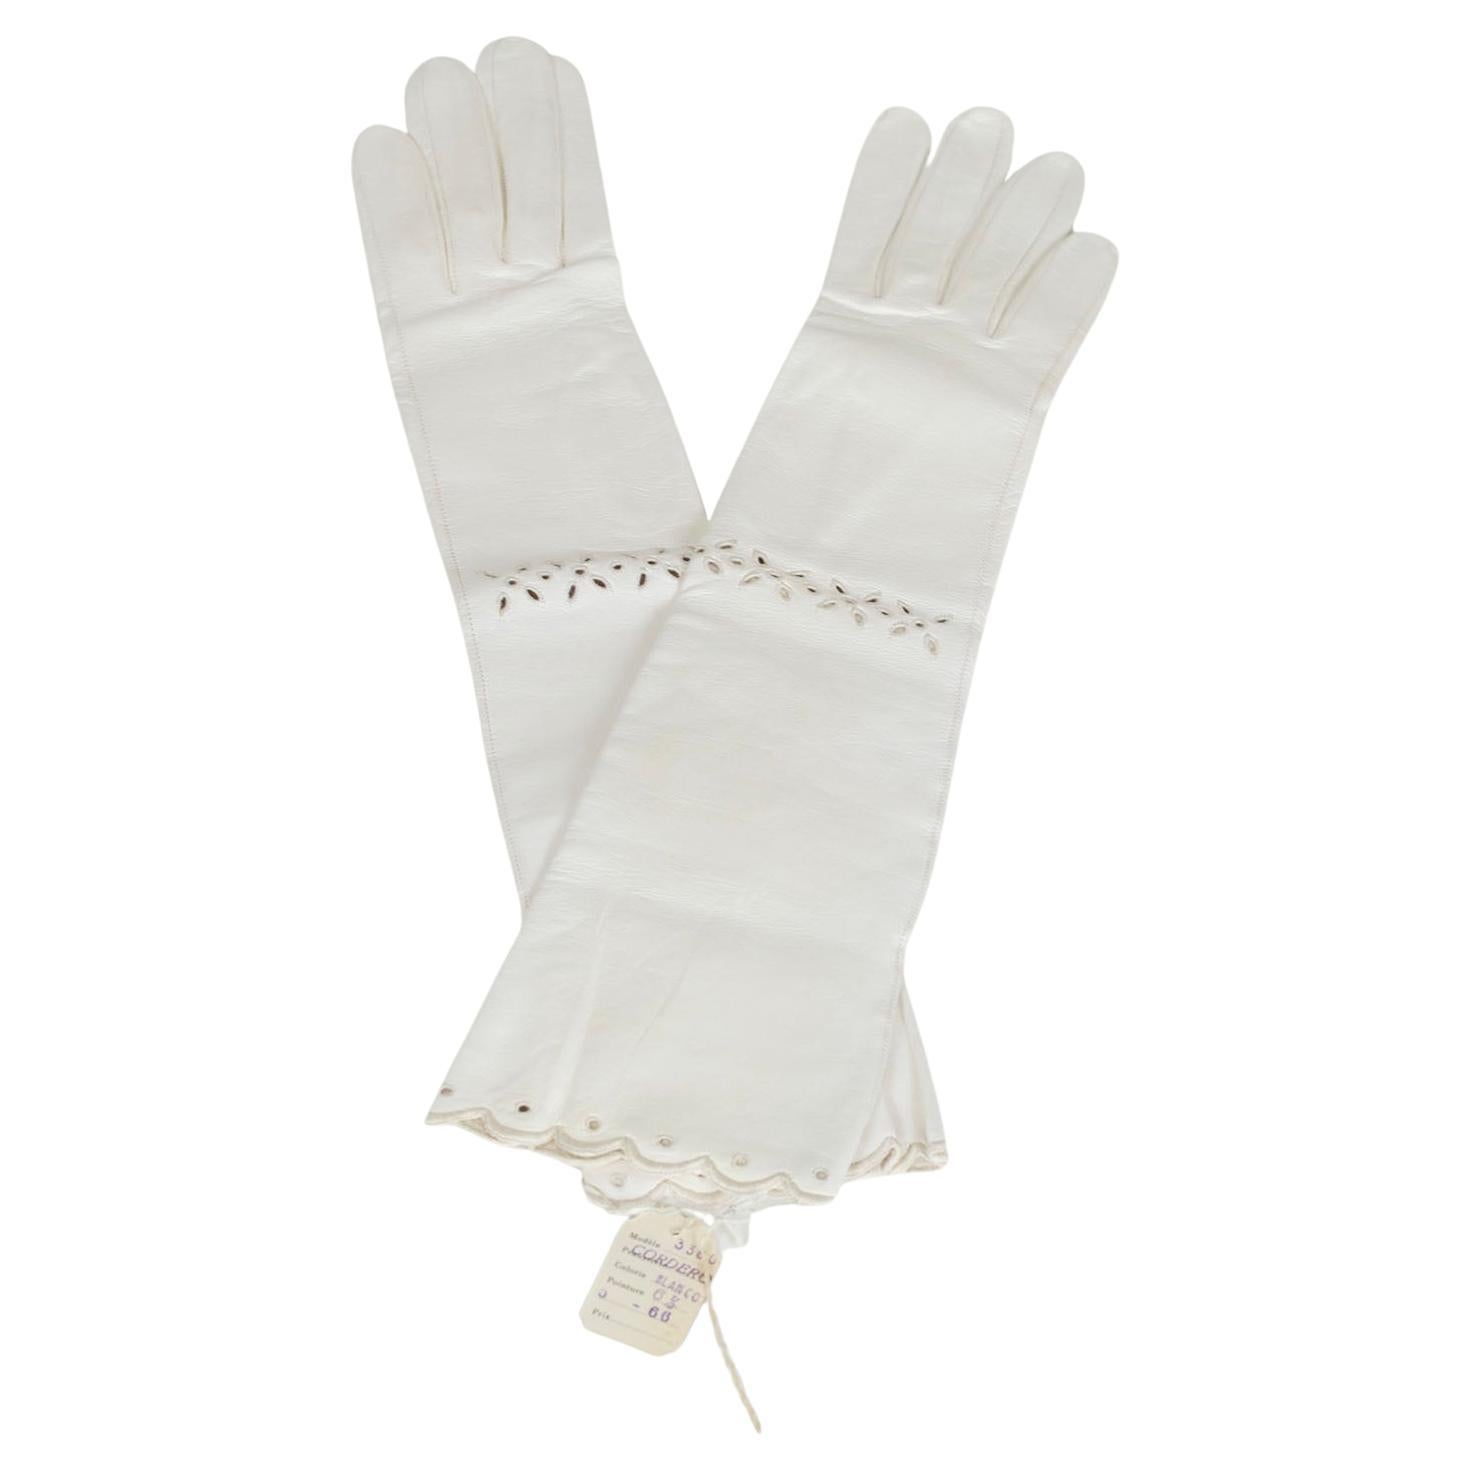 New Christian Dior White Ziegenleder Ellenbogen Handschuhe w Ösen, Orig Pkg - XS-S, 1950er Jahre